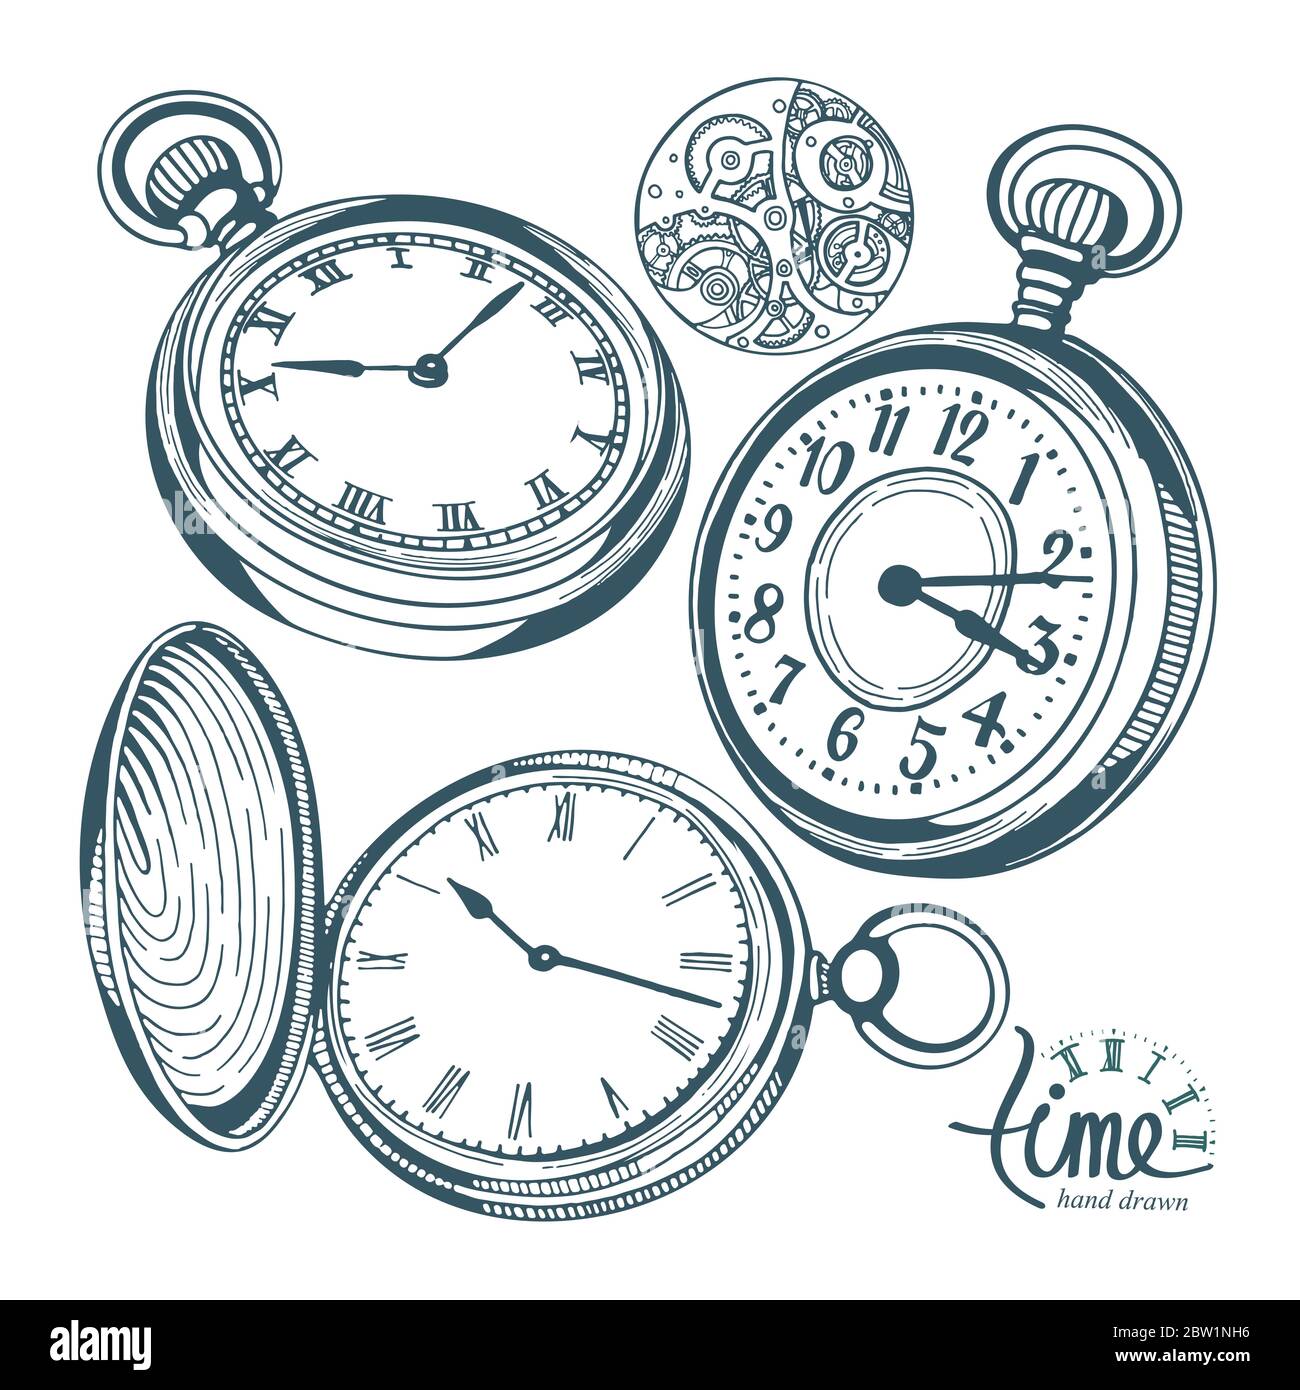 Taschenuhr. Handgezeichnete Taschenuhr Vektor-Illustrationen Set. Skizze  Zeichnung alte Uhr Symbole gesetzt Stock-Vektorgrafik - Alamy